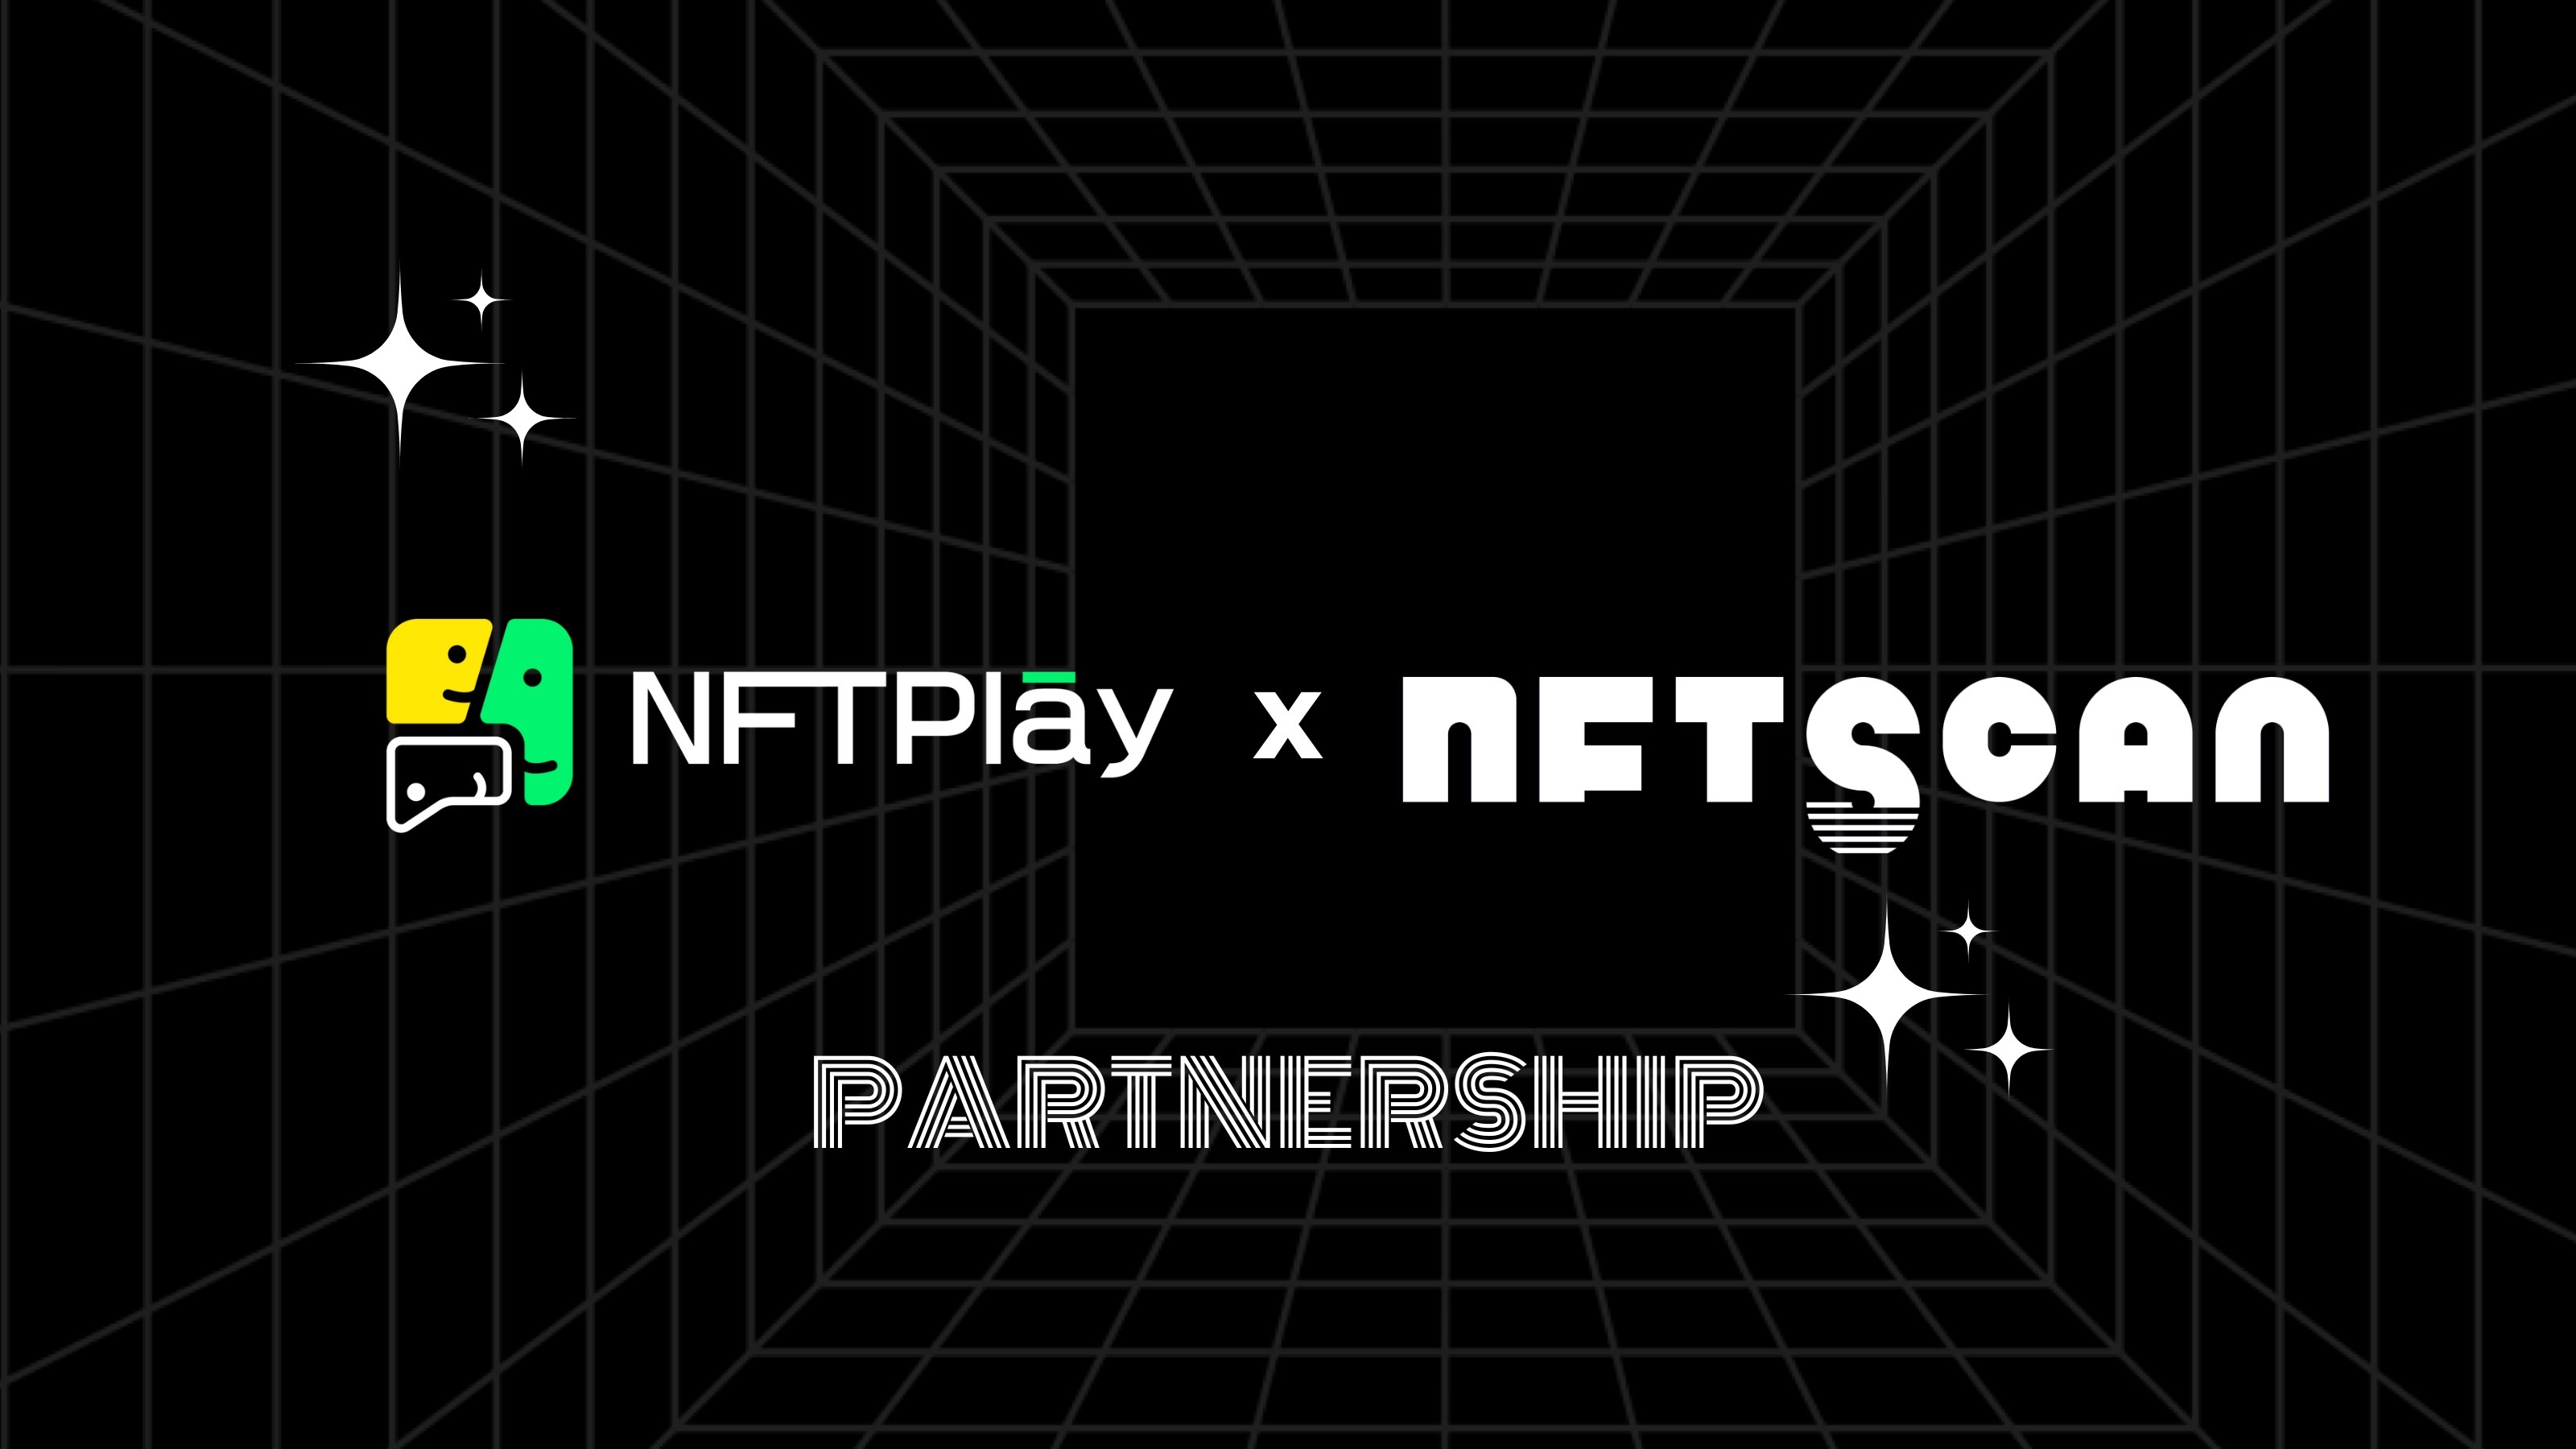 NFTScan 与 NFTPlay 在 NFT 数据领域达成战略合作